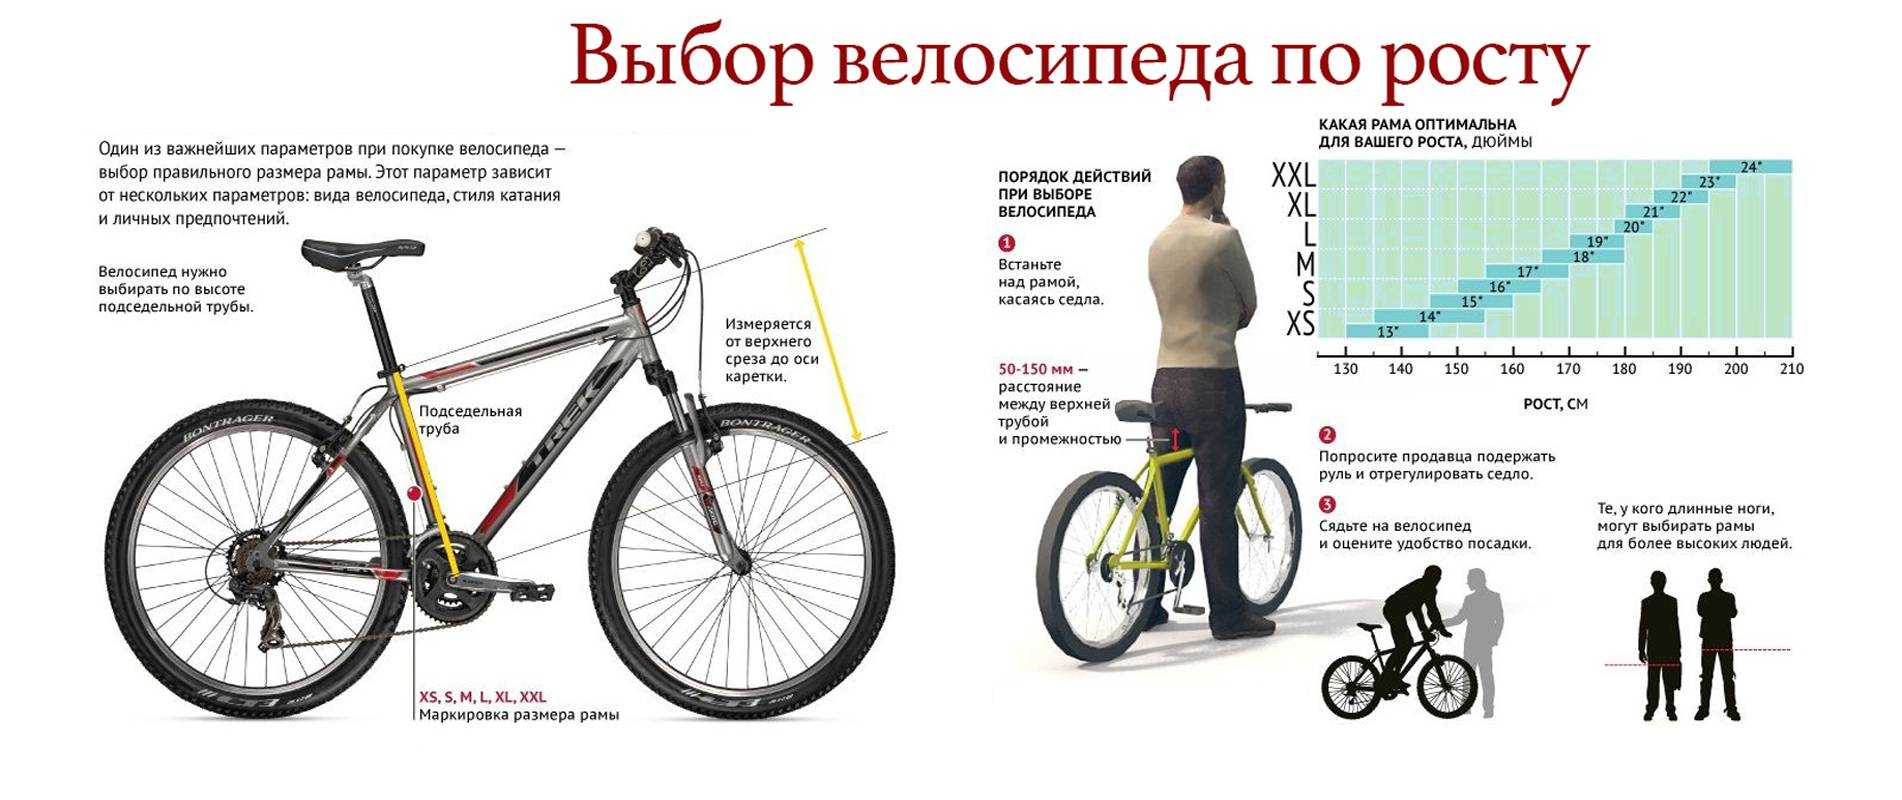 Трудности выбора велосипедных педалей, какие педали для велосипеда лучше